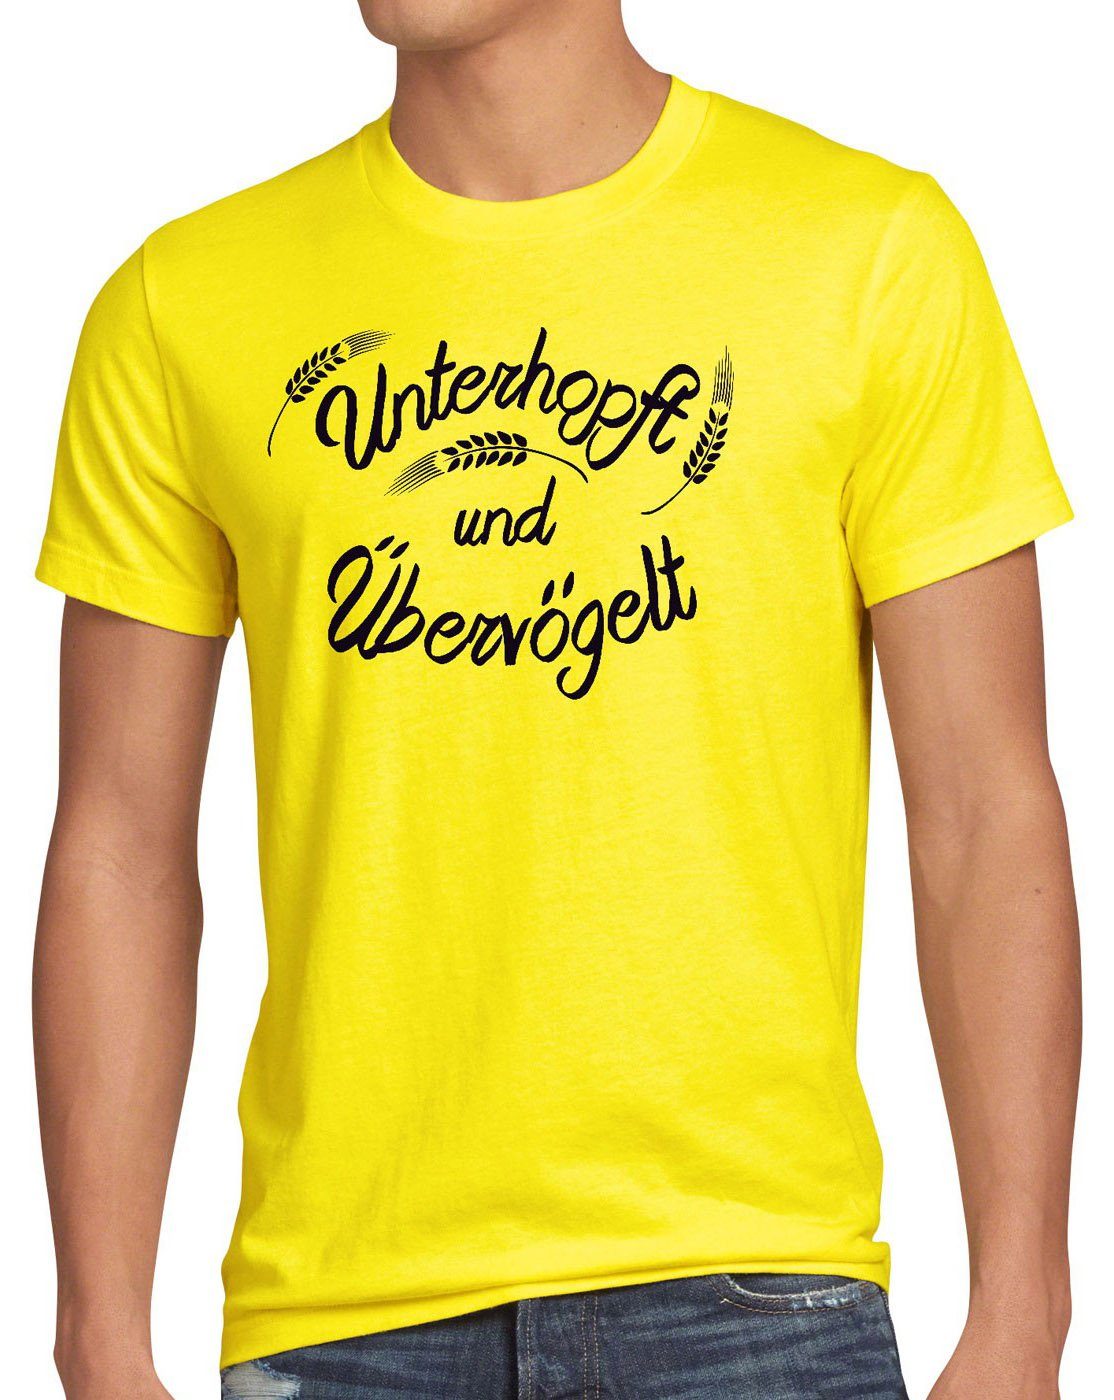 style3 Print-Shirt Herren T-Shirt Unterhopft Übervögelt Kult Shirt Funshirt Spruch Bier Malz Fun gelb